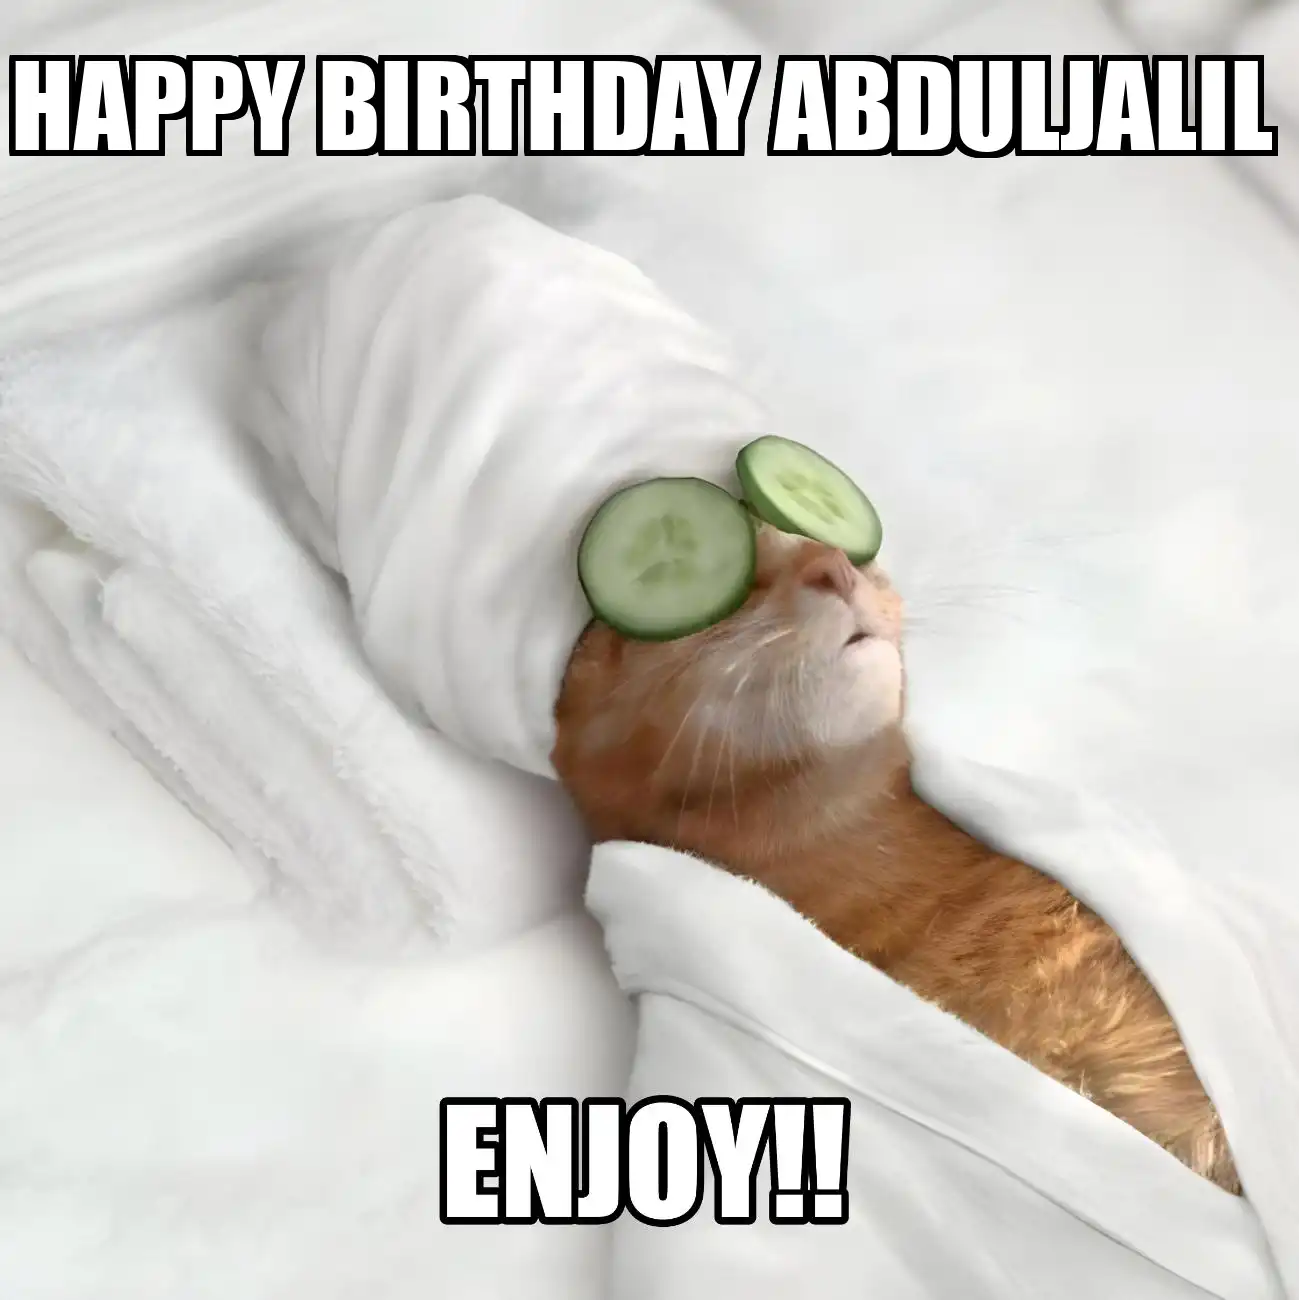 Happy Birthday Abduljalil Enjoy Cat Meme